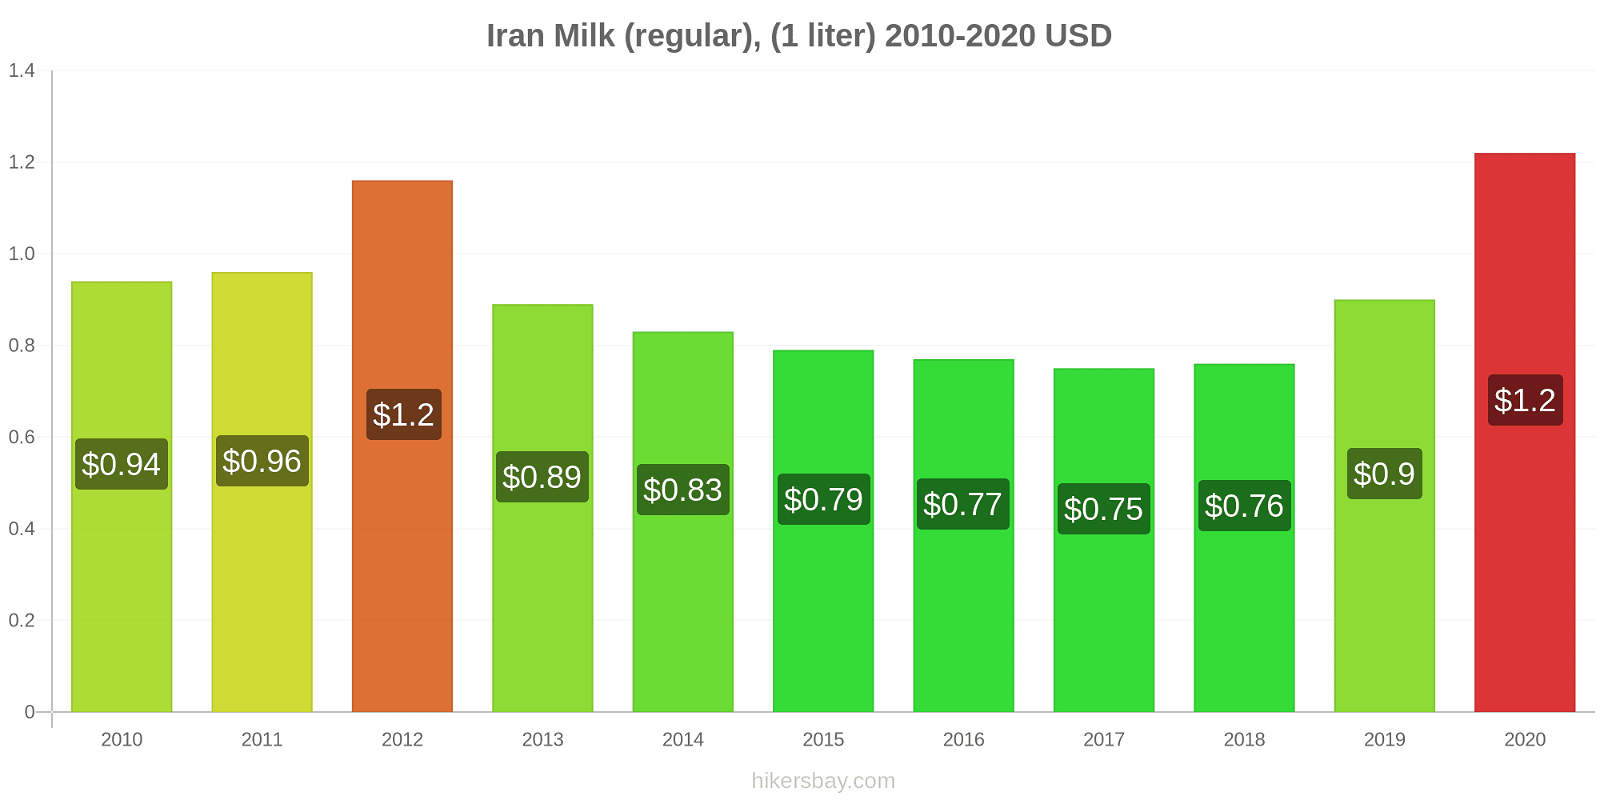 Iran price changes Milk (regular), (1 liter) hikersbay.com